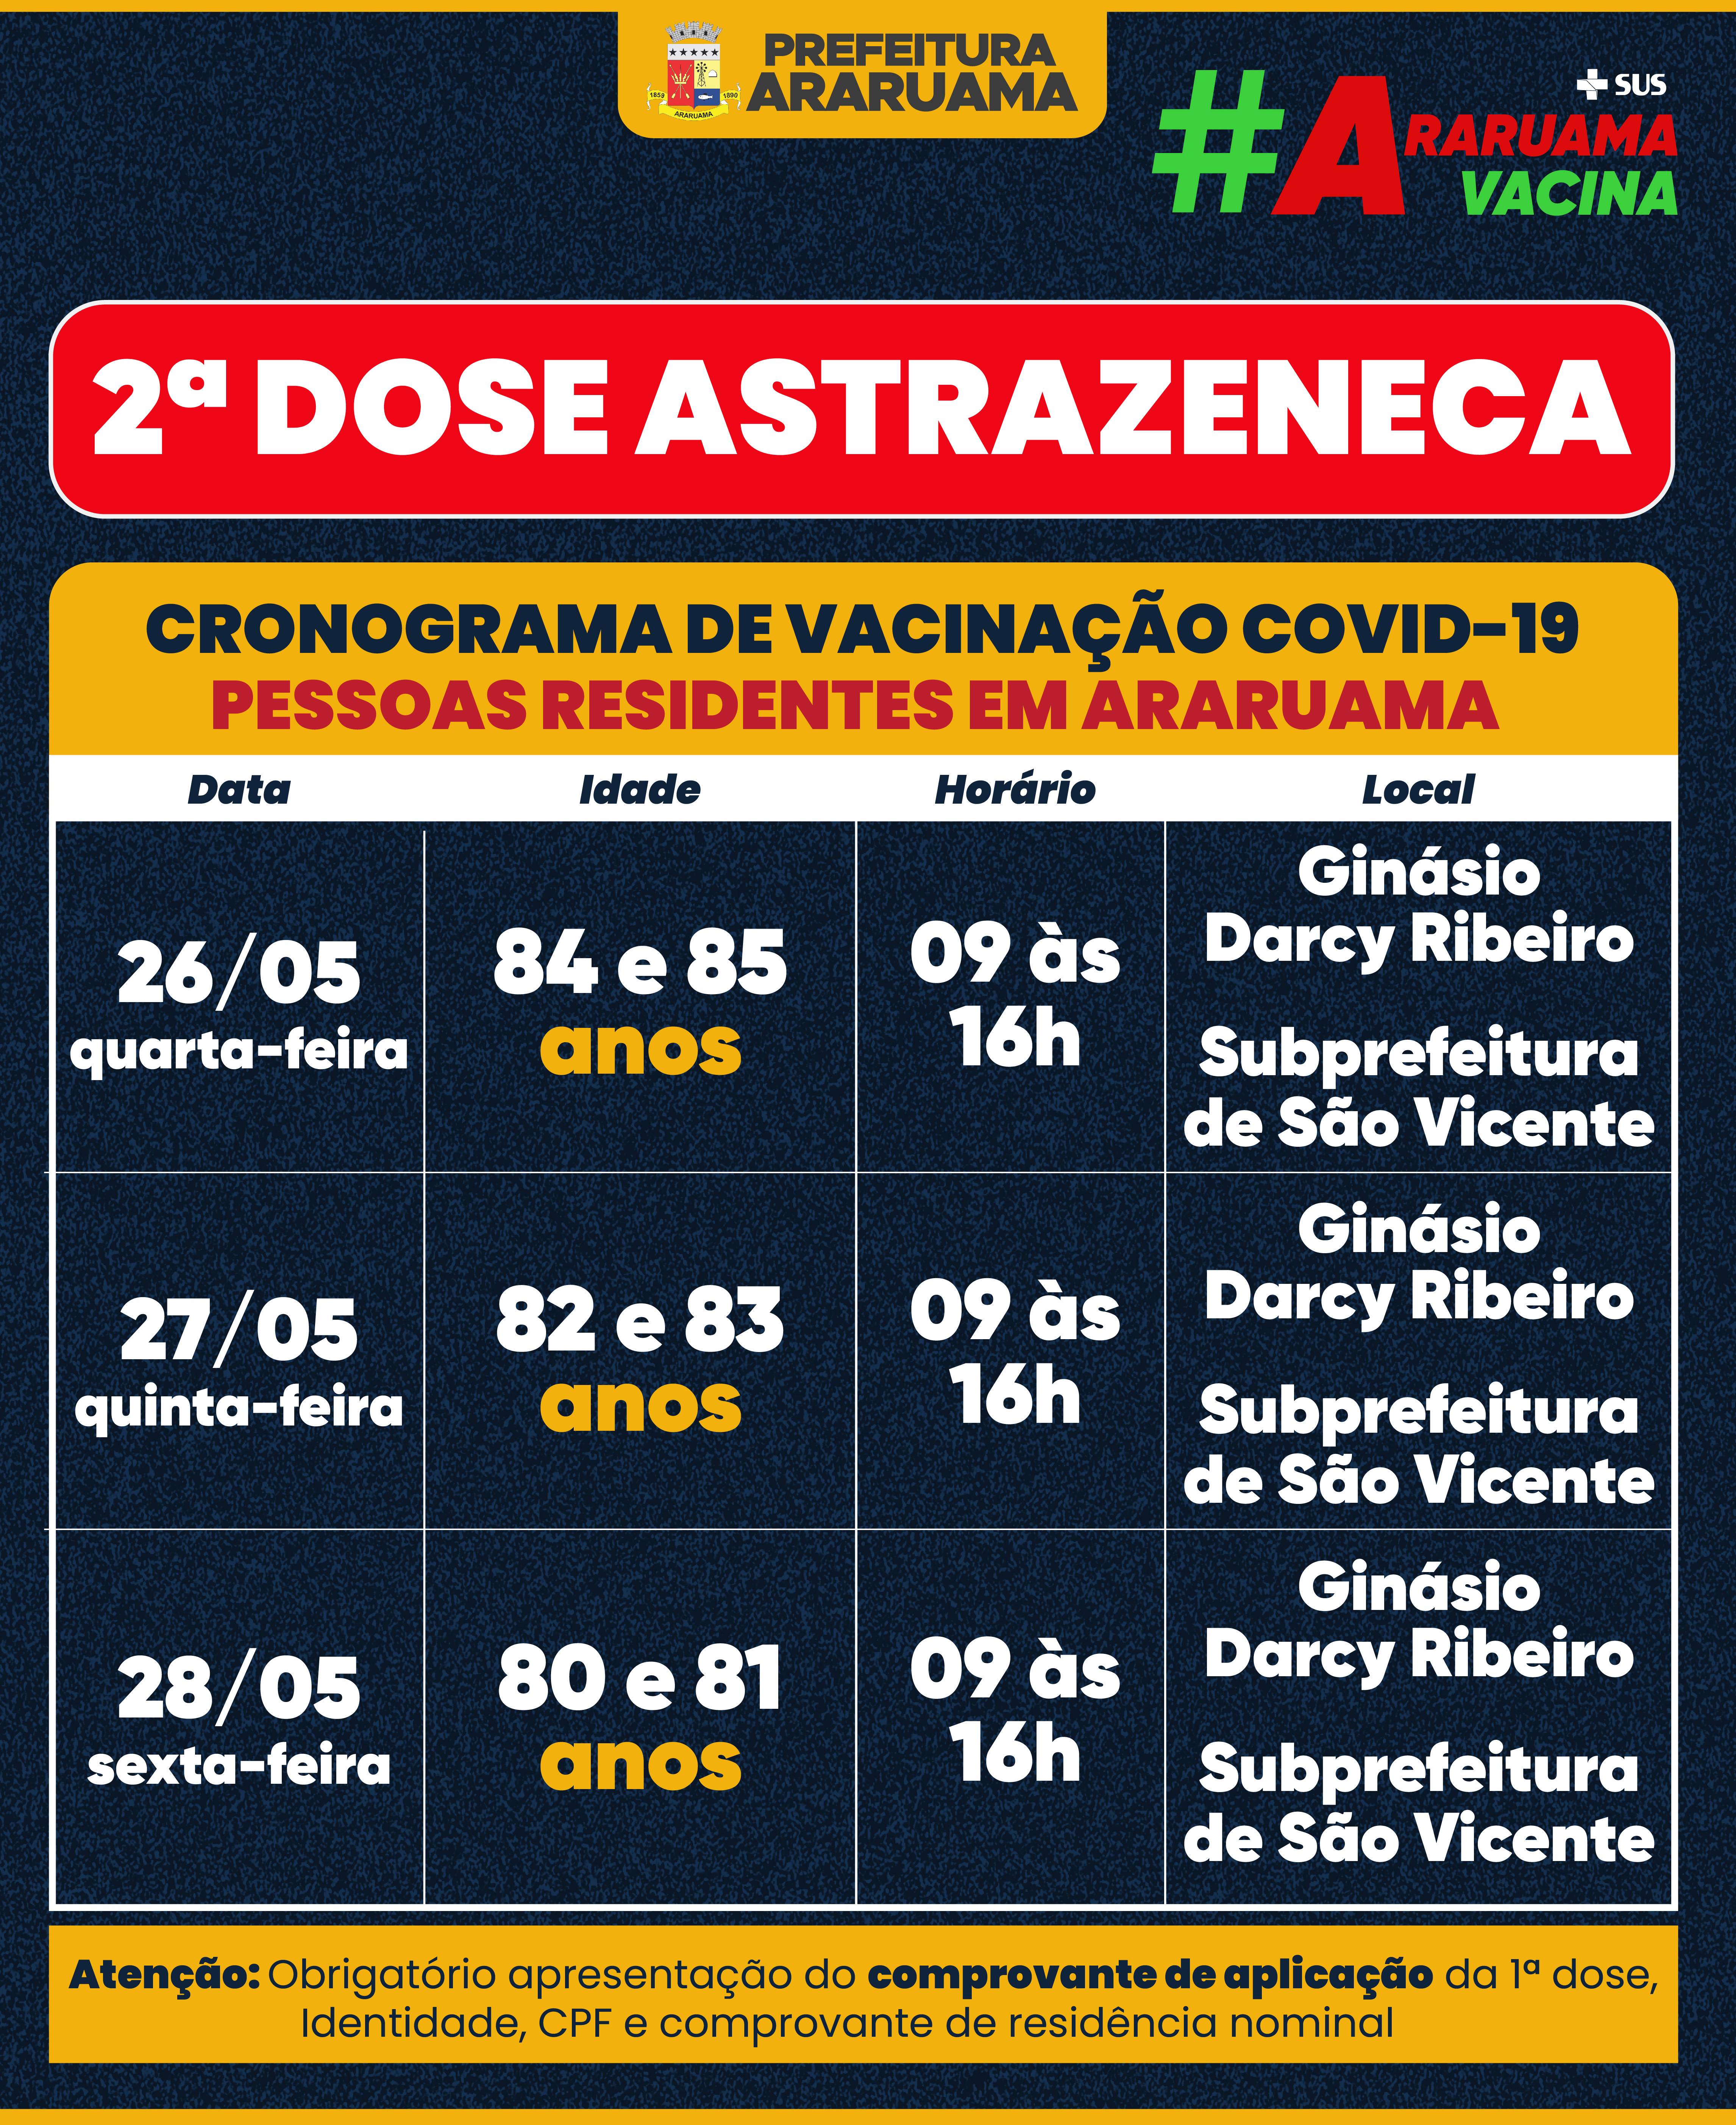 Calendário de vacinação para segunda dose da Astrazeneca